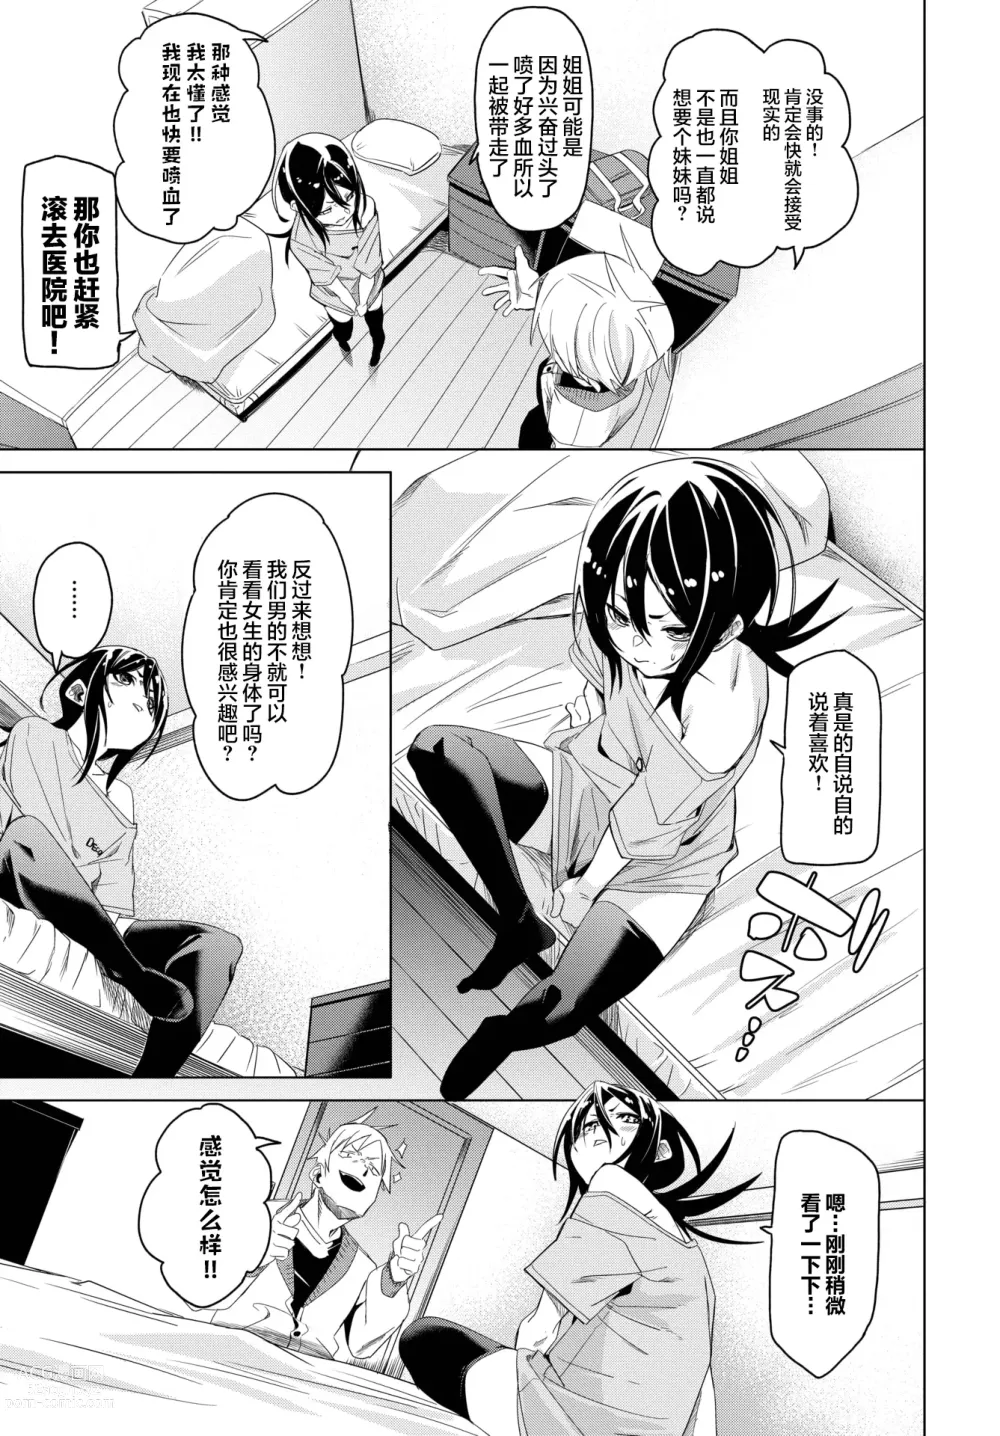 Page 4 of manga Kawatchatta!!